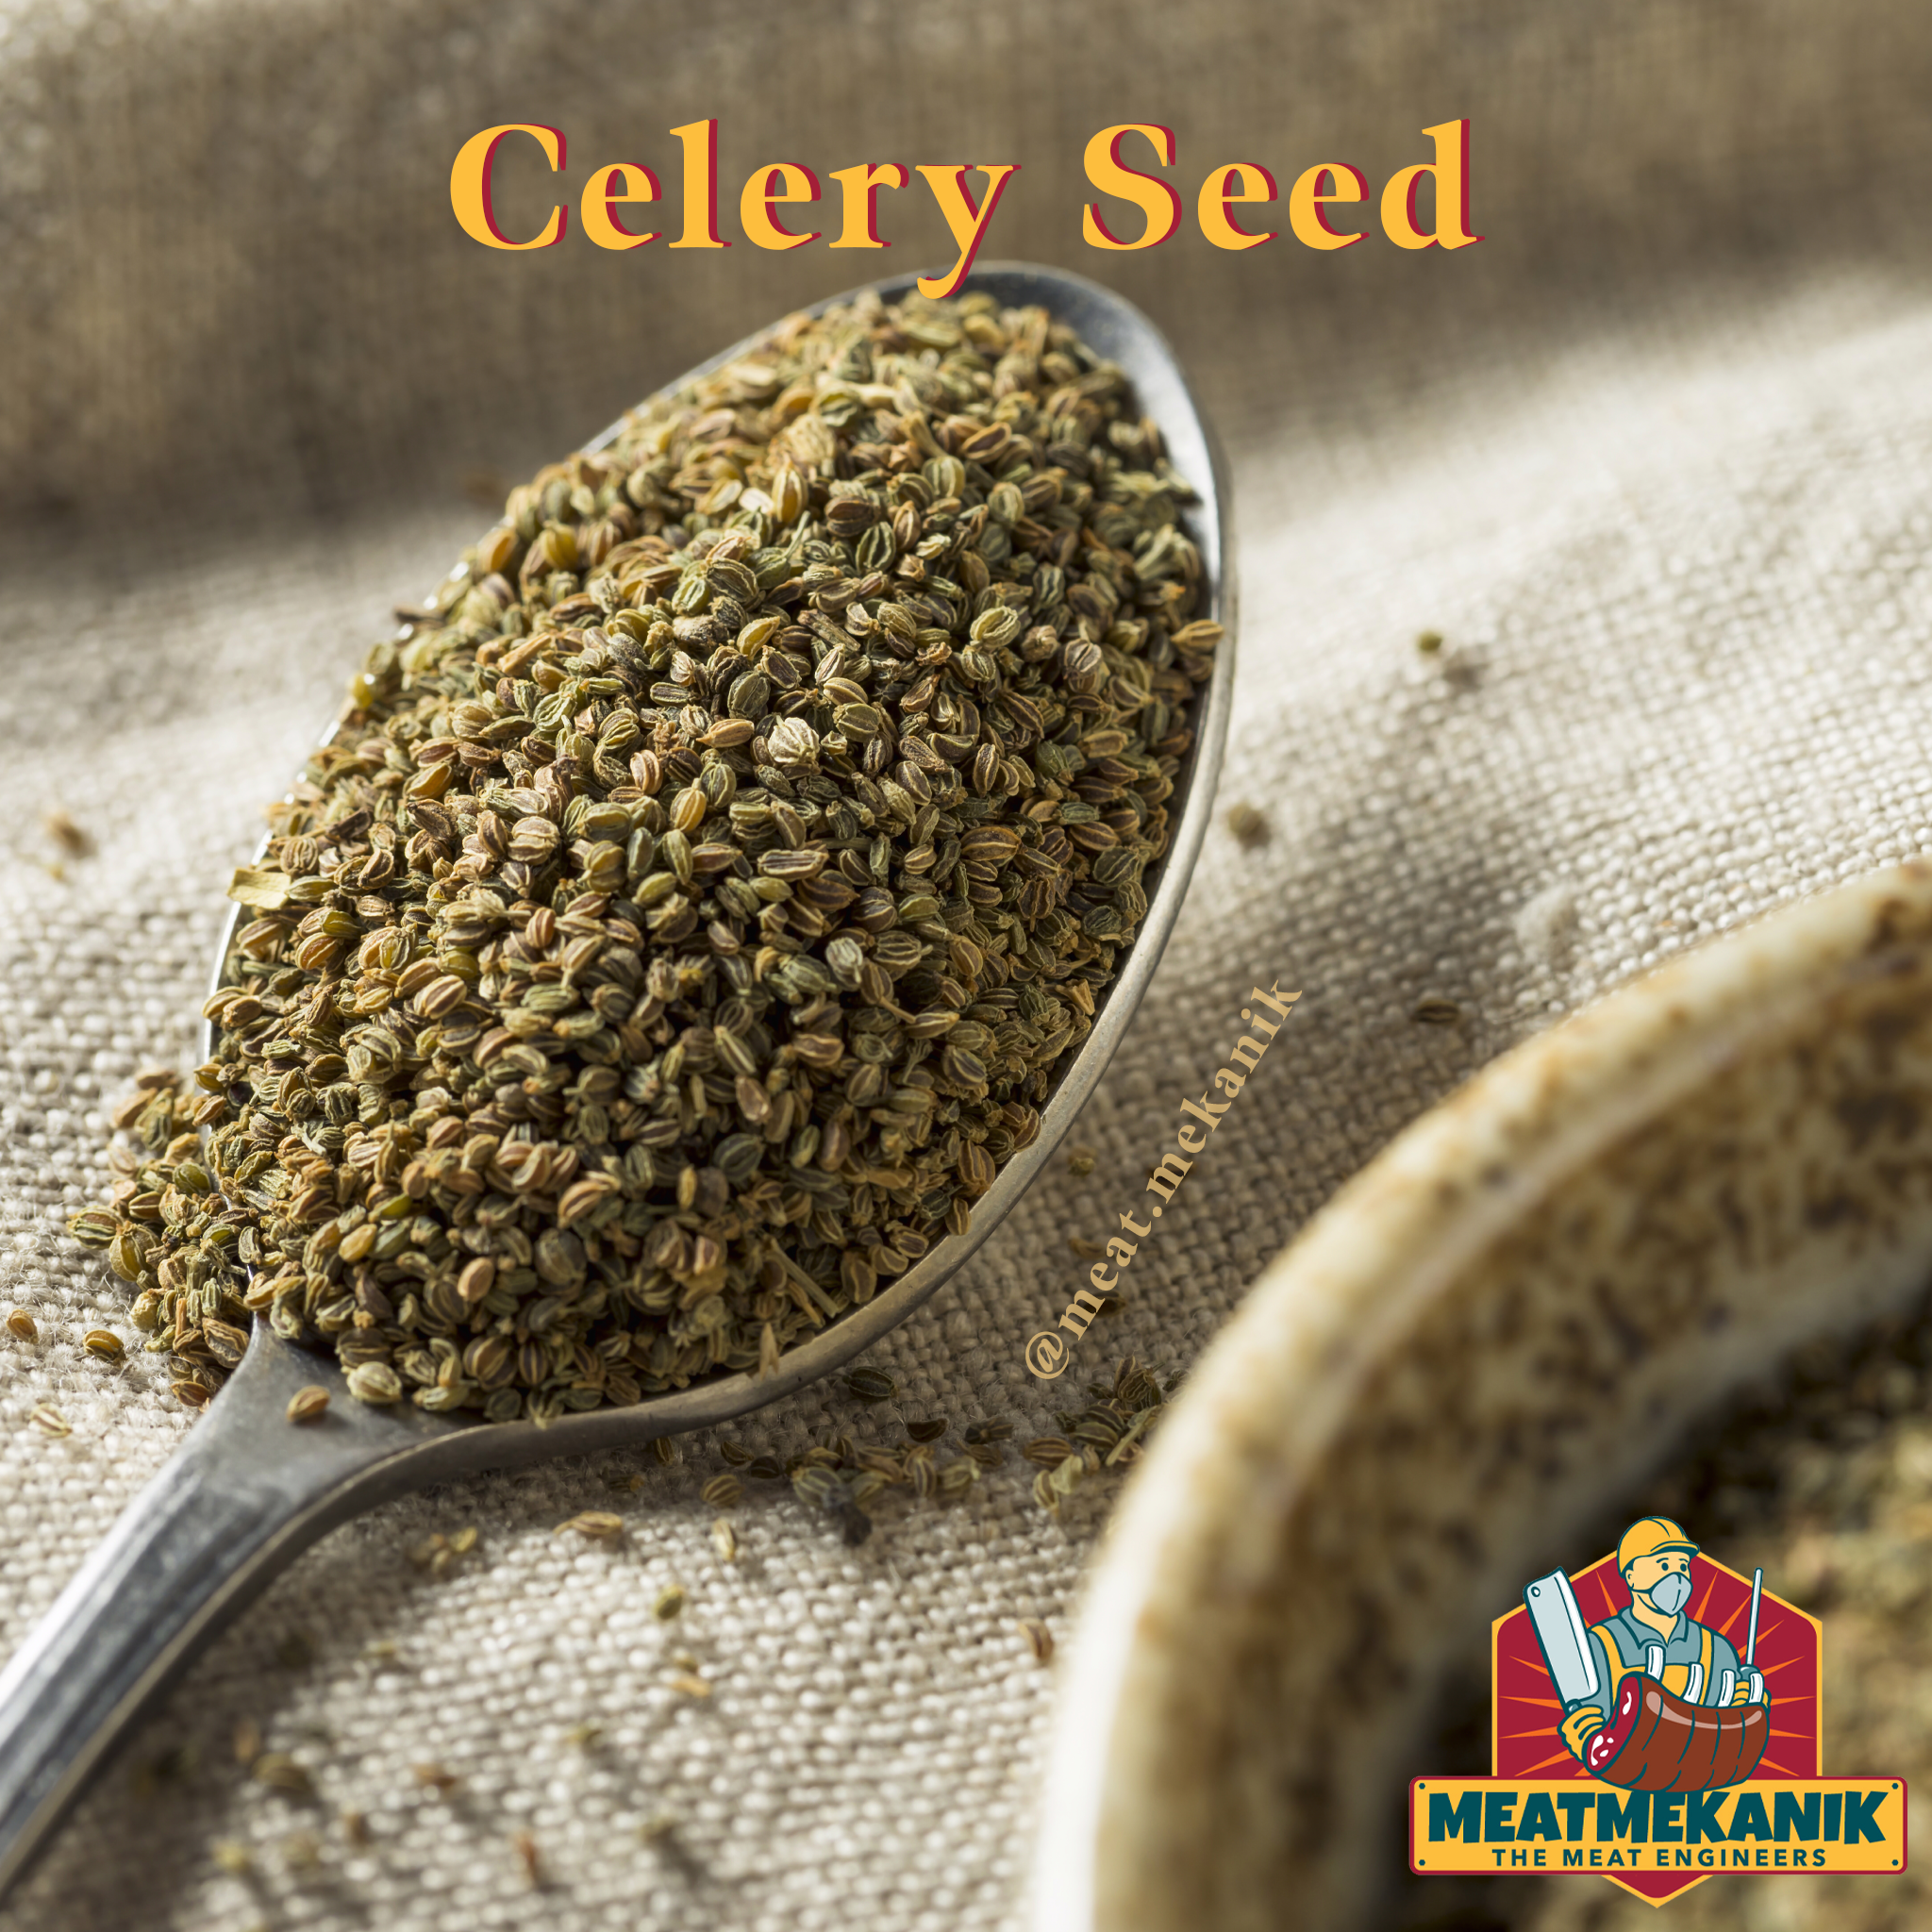 Celery Seed - Meat Mekanik